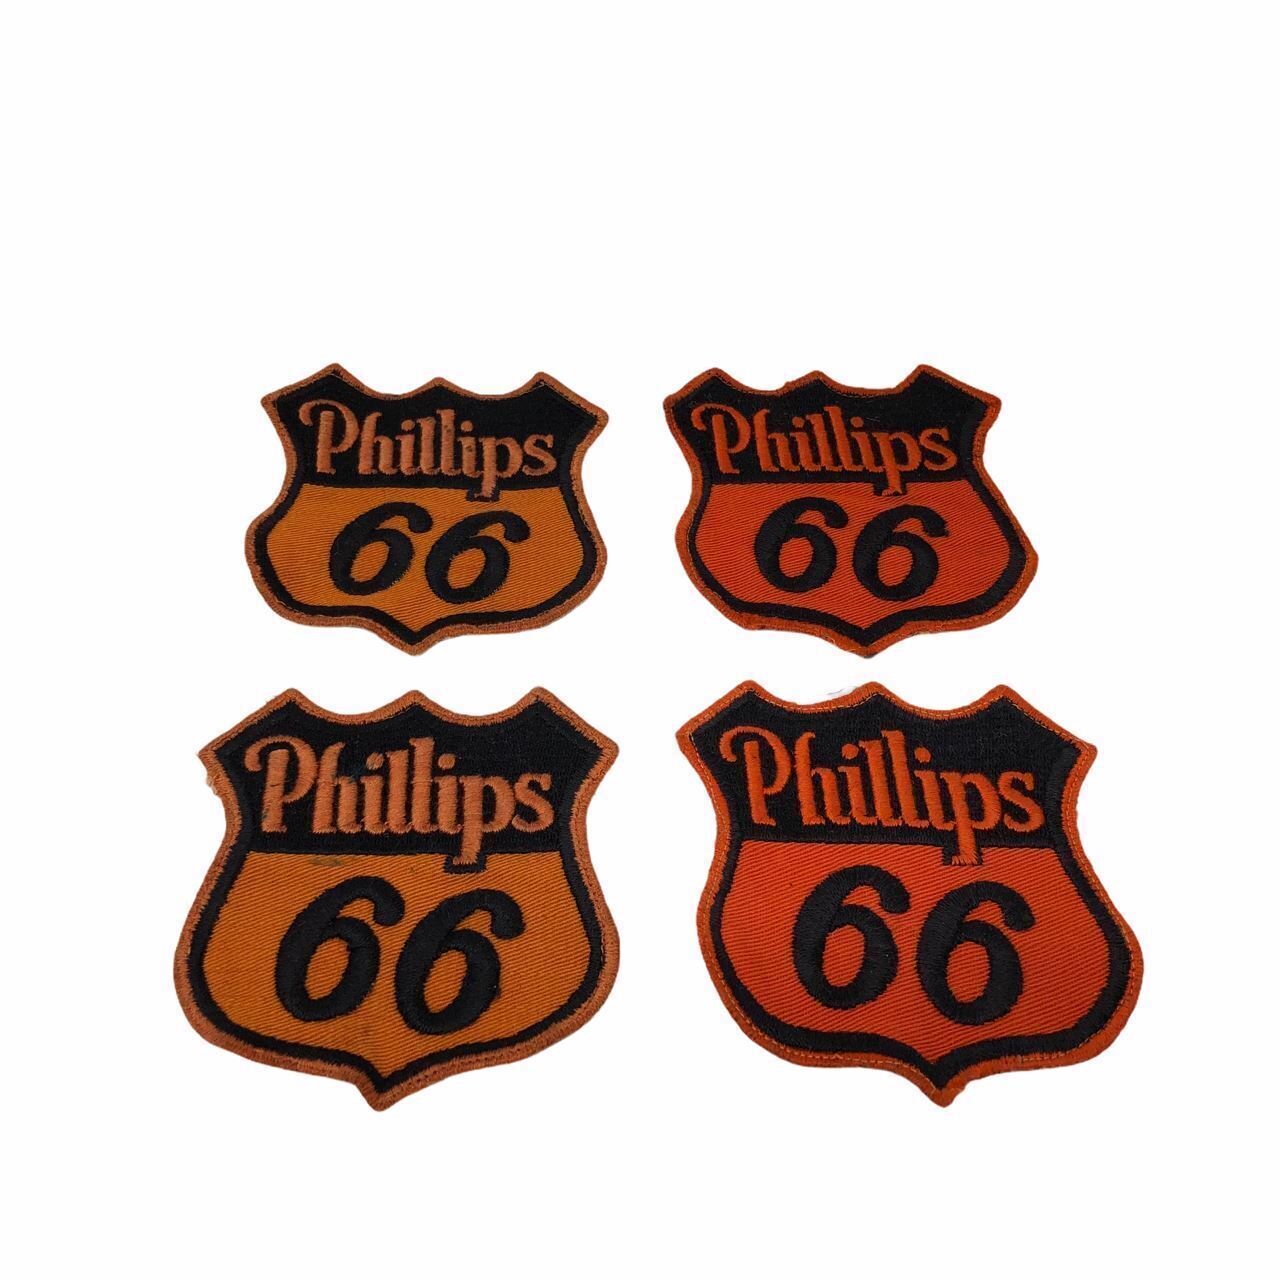 Original 1950\'s Phillips 66 Gas Gasoline Oil Service Station Uniform Patch Lot 4